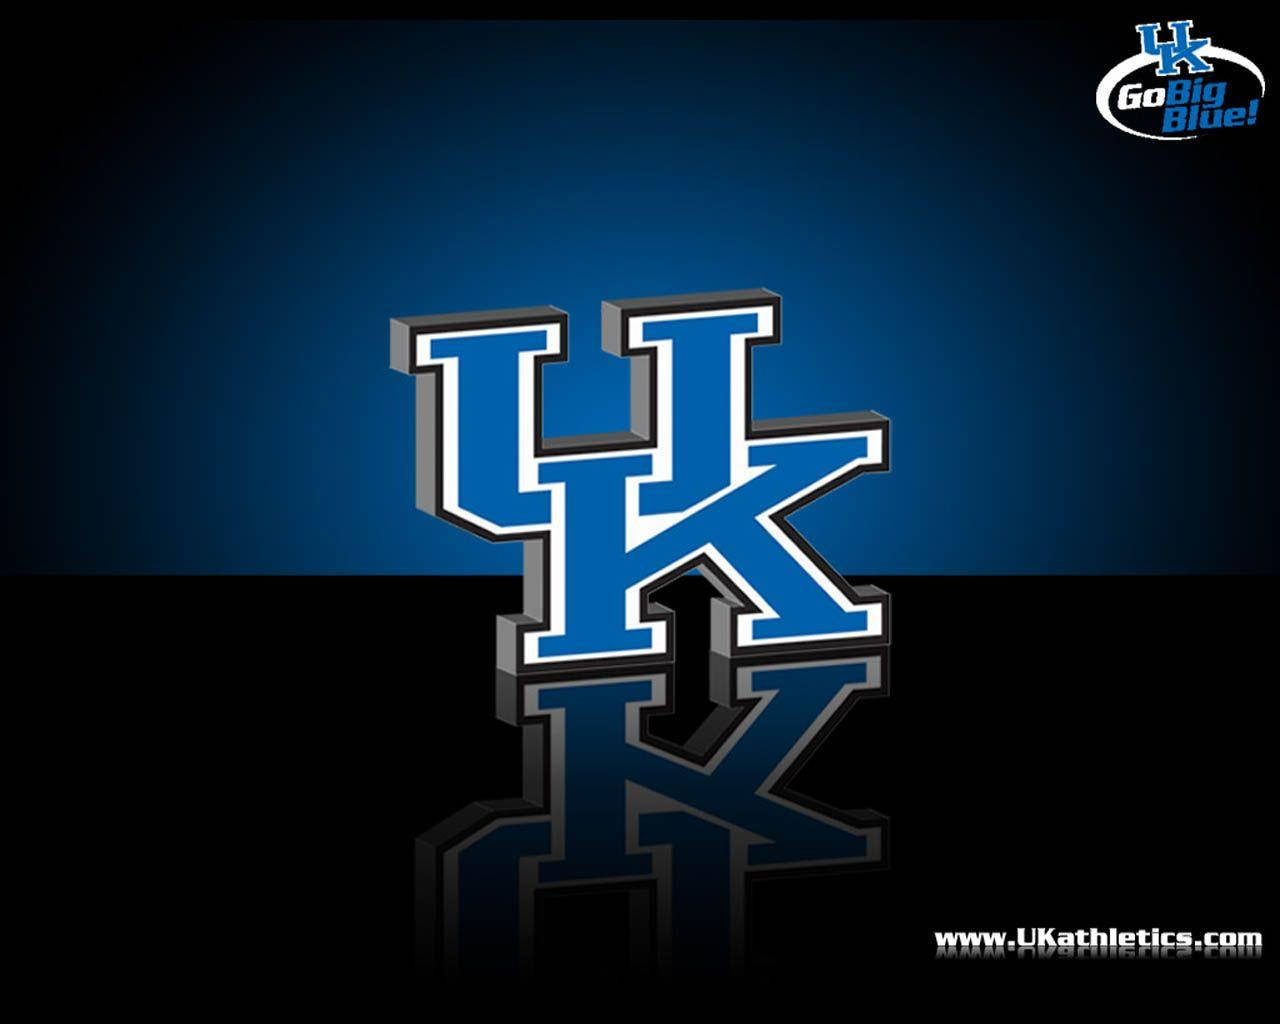 3d Kentucky Logo Background